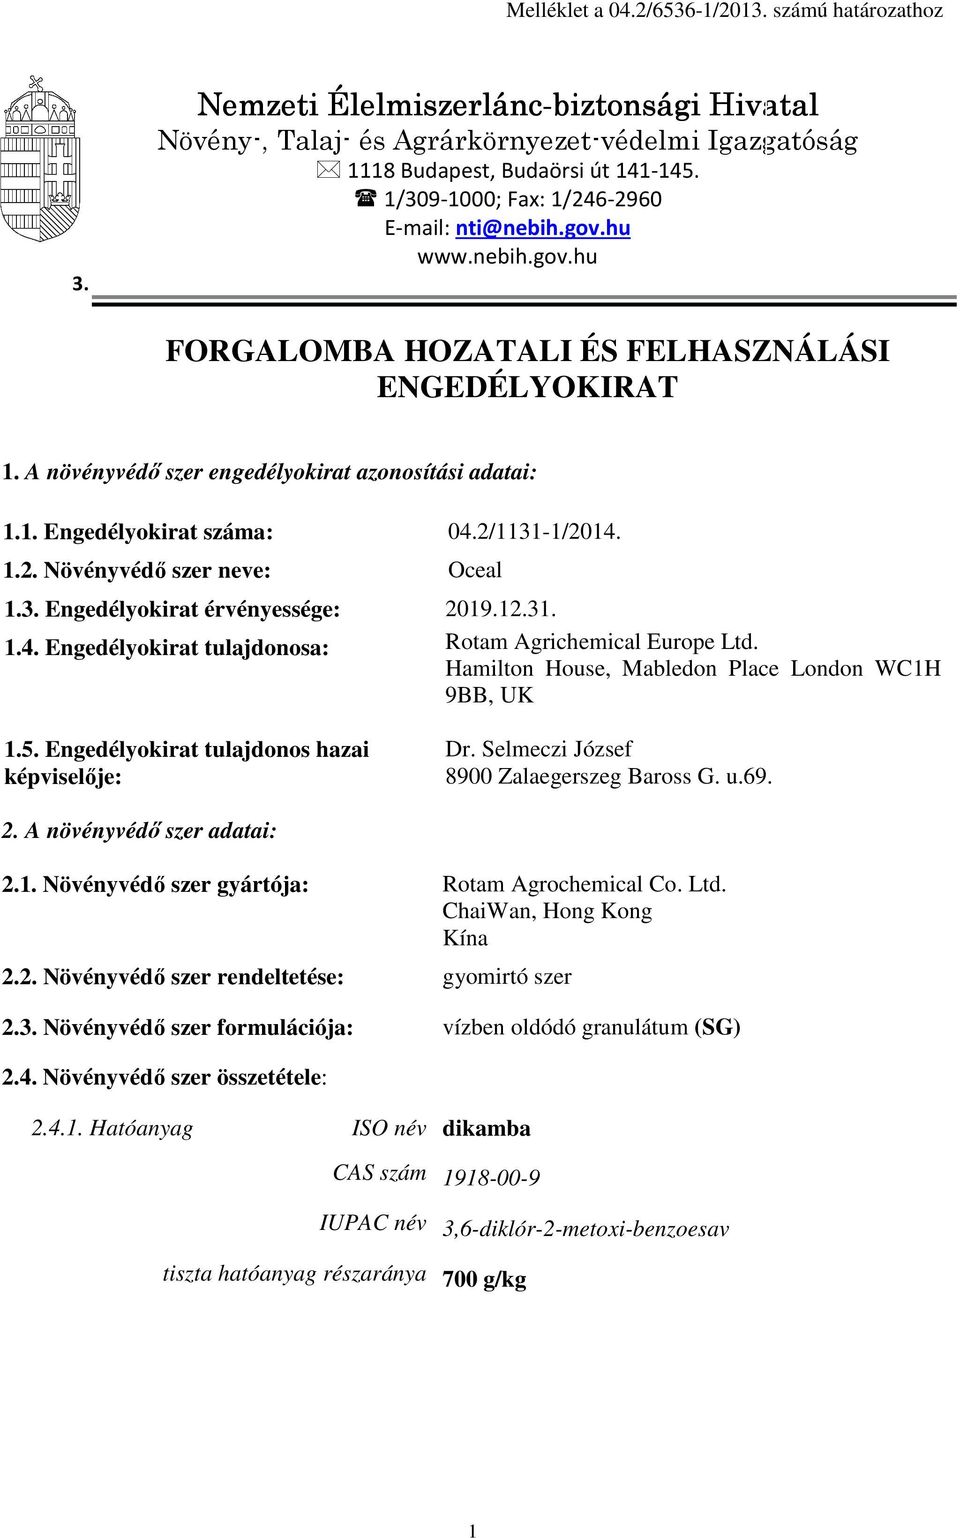 2/1131-1/2014. 1.2. Növényvédő szer neve: Oceal 1.3. Engedélyokirat érvényessége: 2019.12.31. 1.4. Engedélyokirat tulajdonosa: Rotam Agrichemical Europe Ltd.